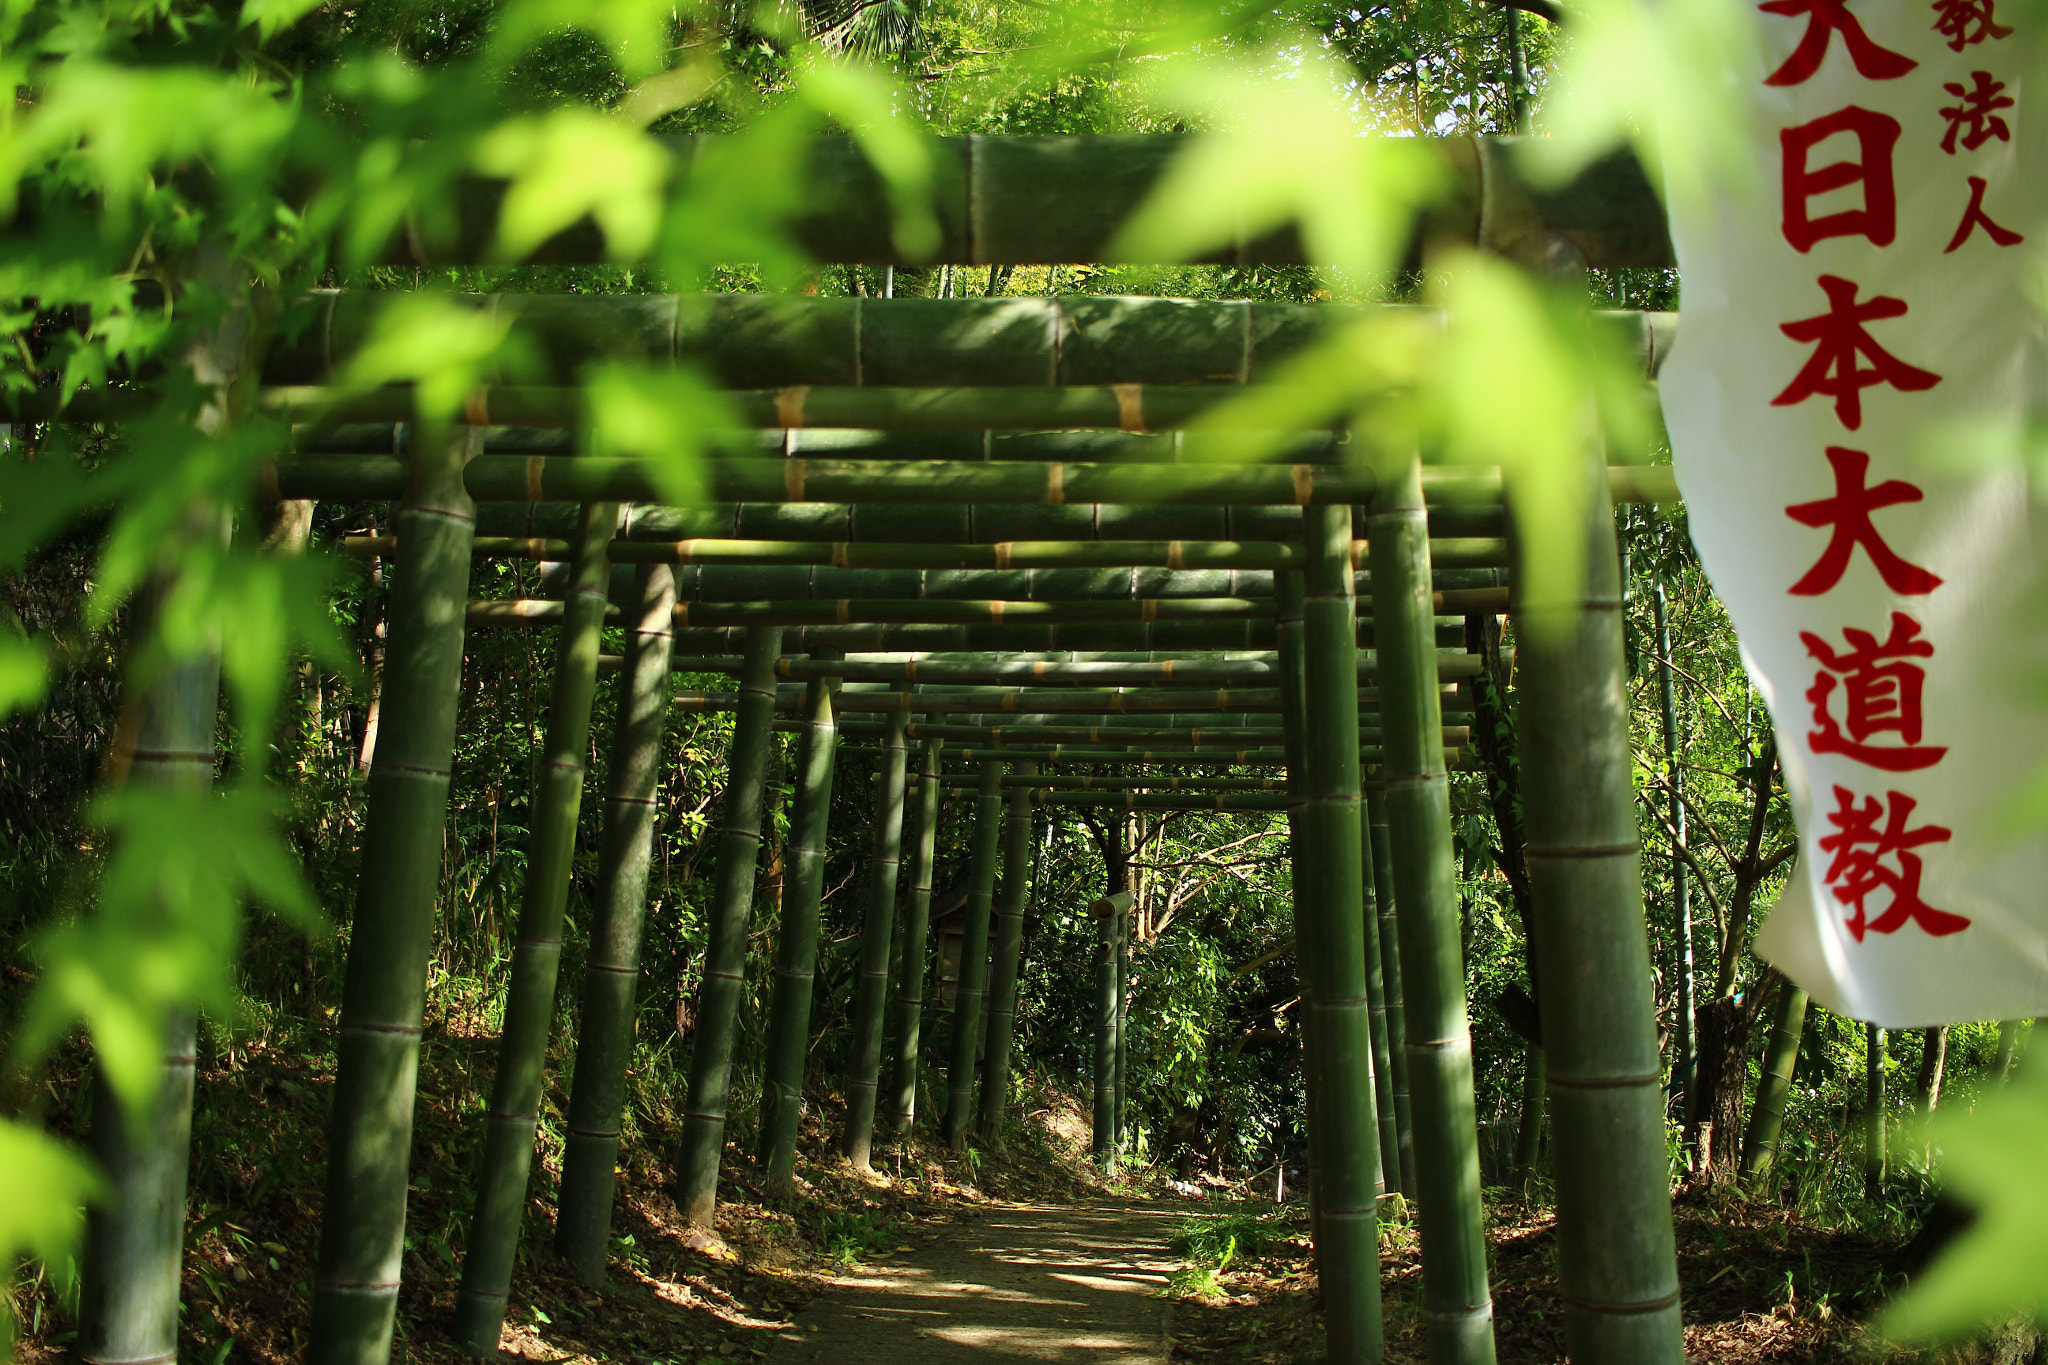 Canon EOS 100D (EOS Rebel SL1 / EOS Kiss X7) sample photo. Bamboo torii gates photography